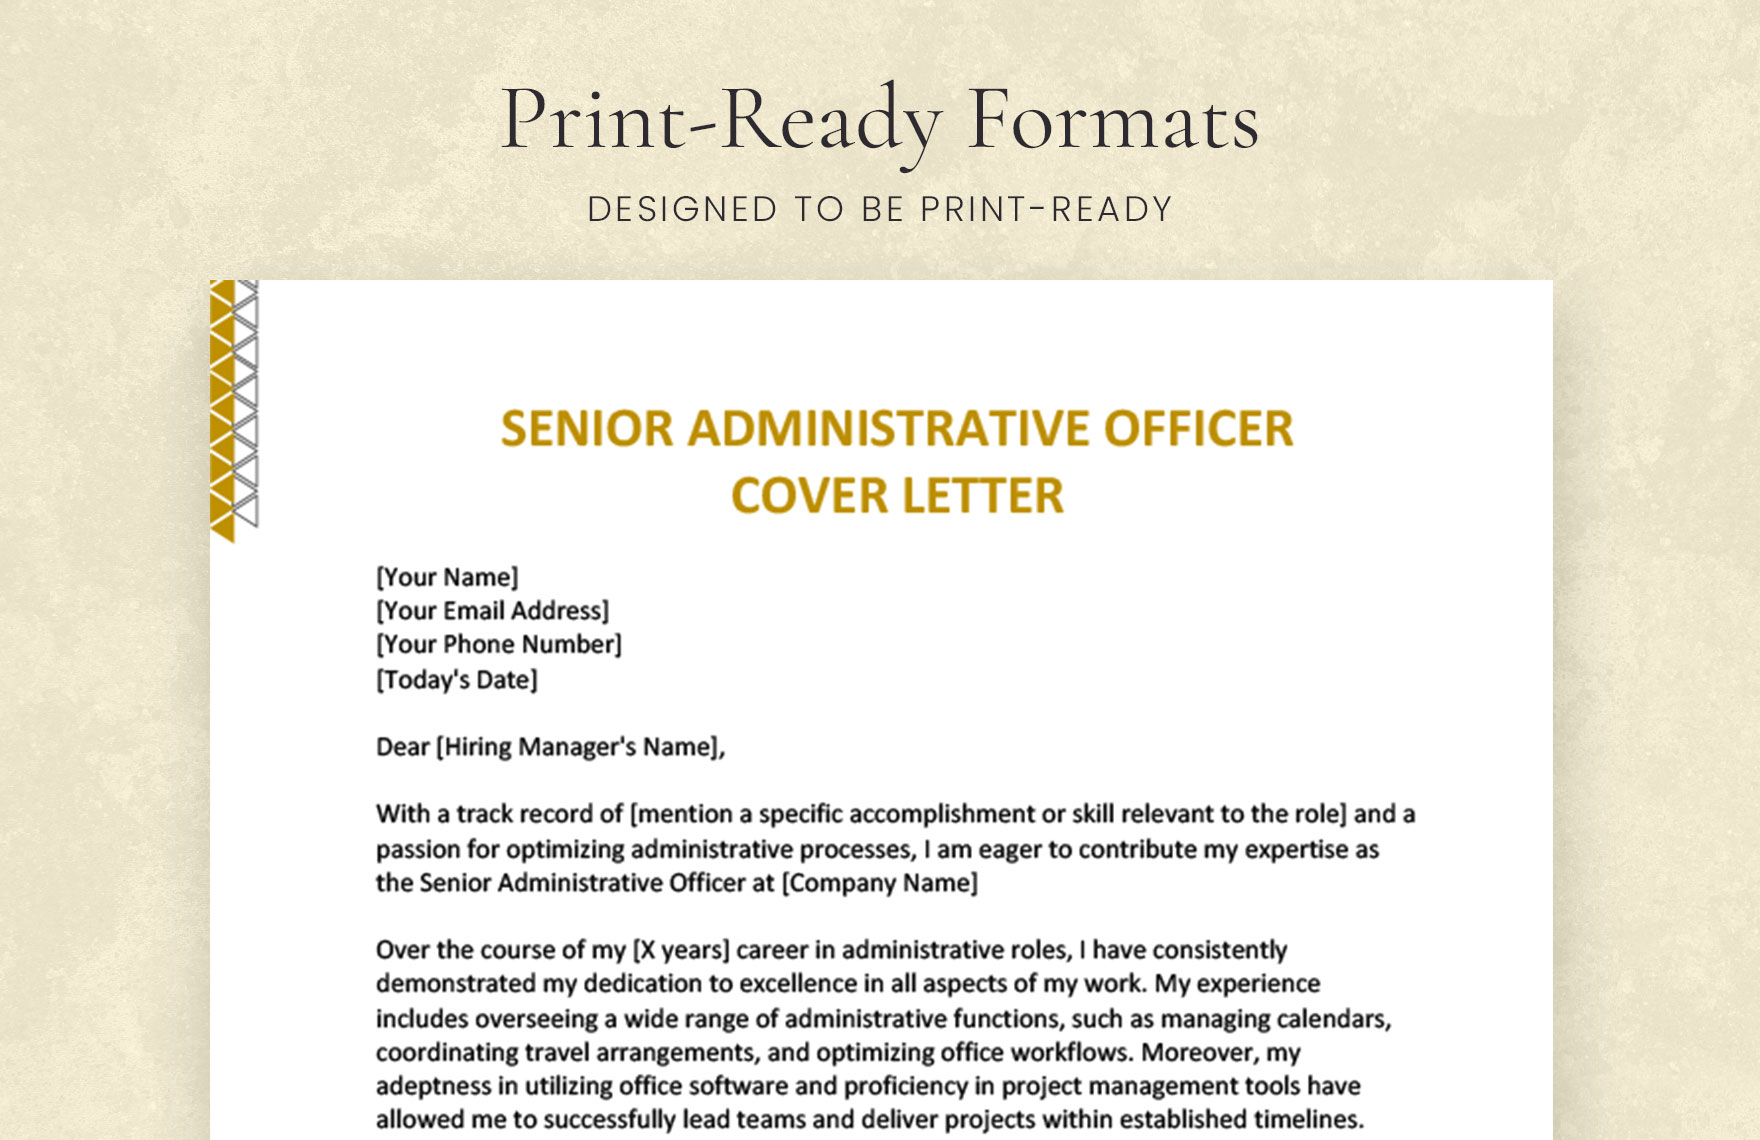 Senior Administrative Officer Cover Letter